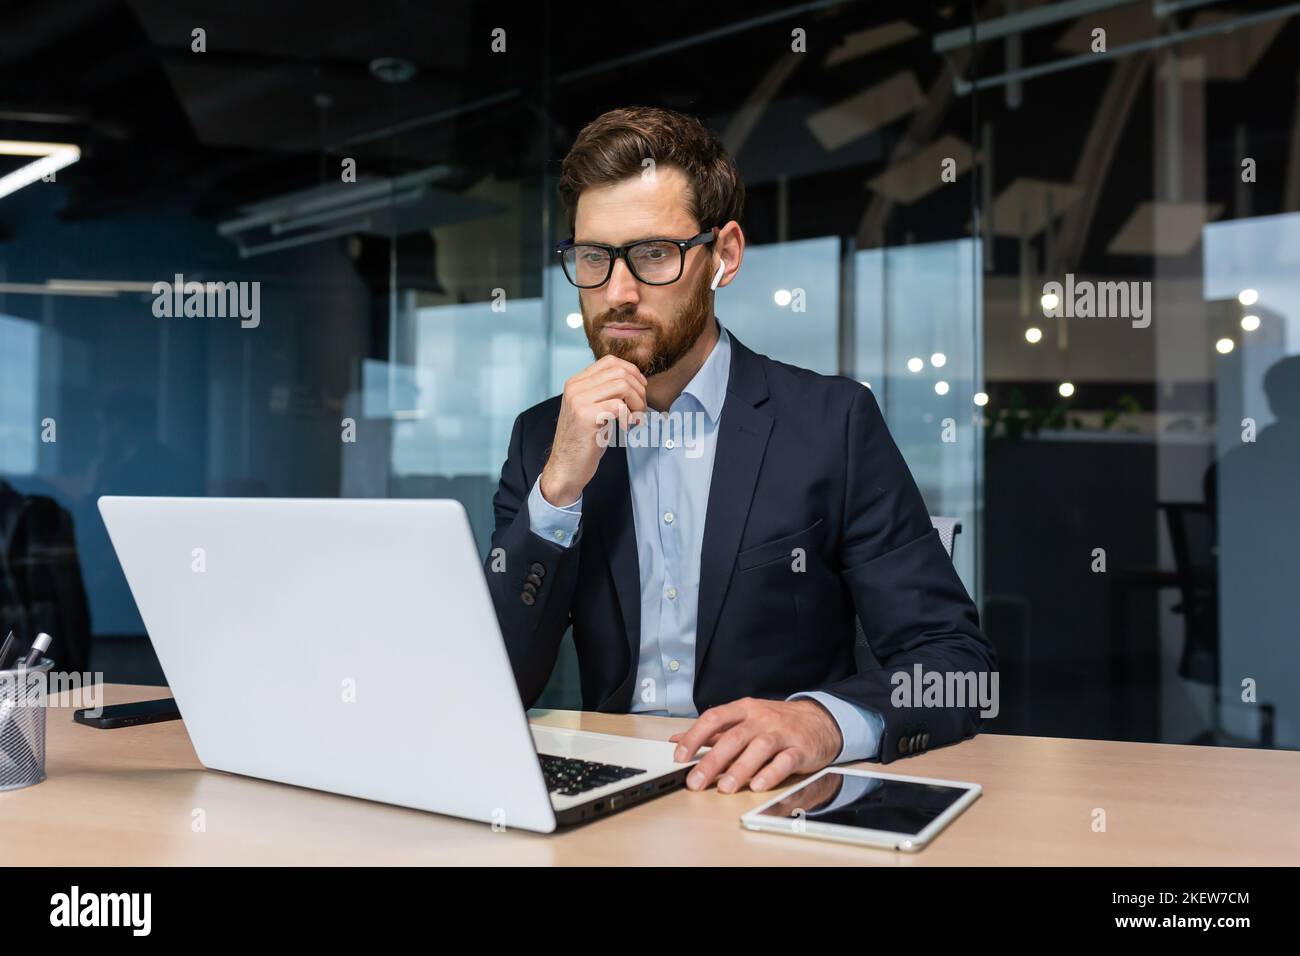 Homme d'affaires senior en lunettes et barbe pense à une décision, l'homme travaille à l'intérieur du bureau et utilise un ordinateur portable au travail, l'investisseur mature dans une combinaison d'affaires est assis à la table Banque D'Images